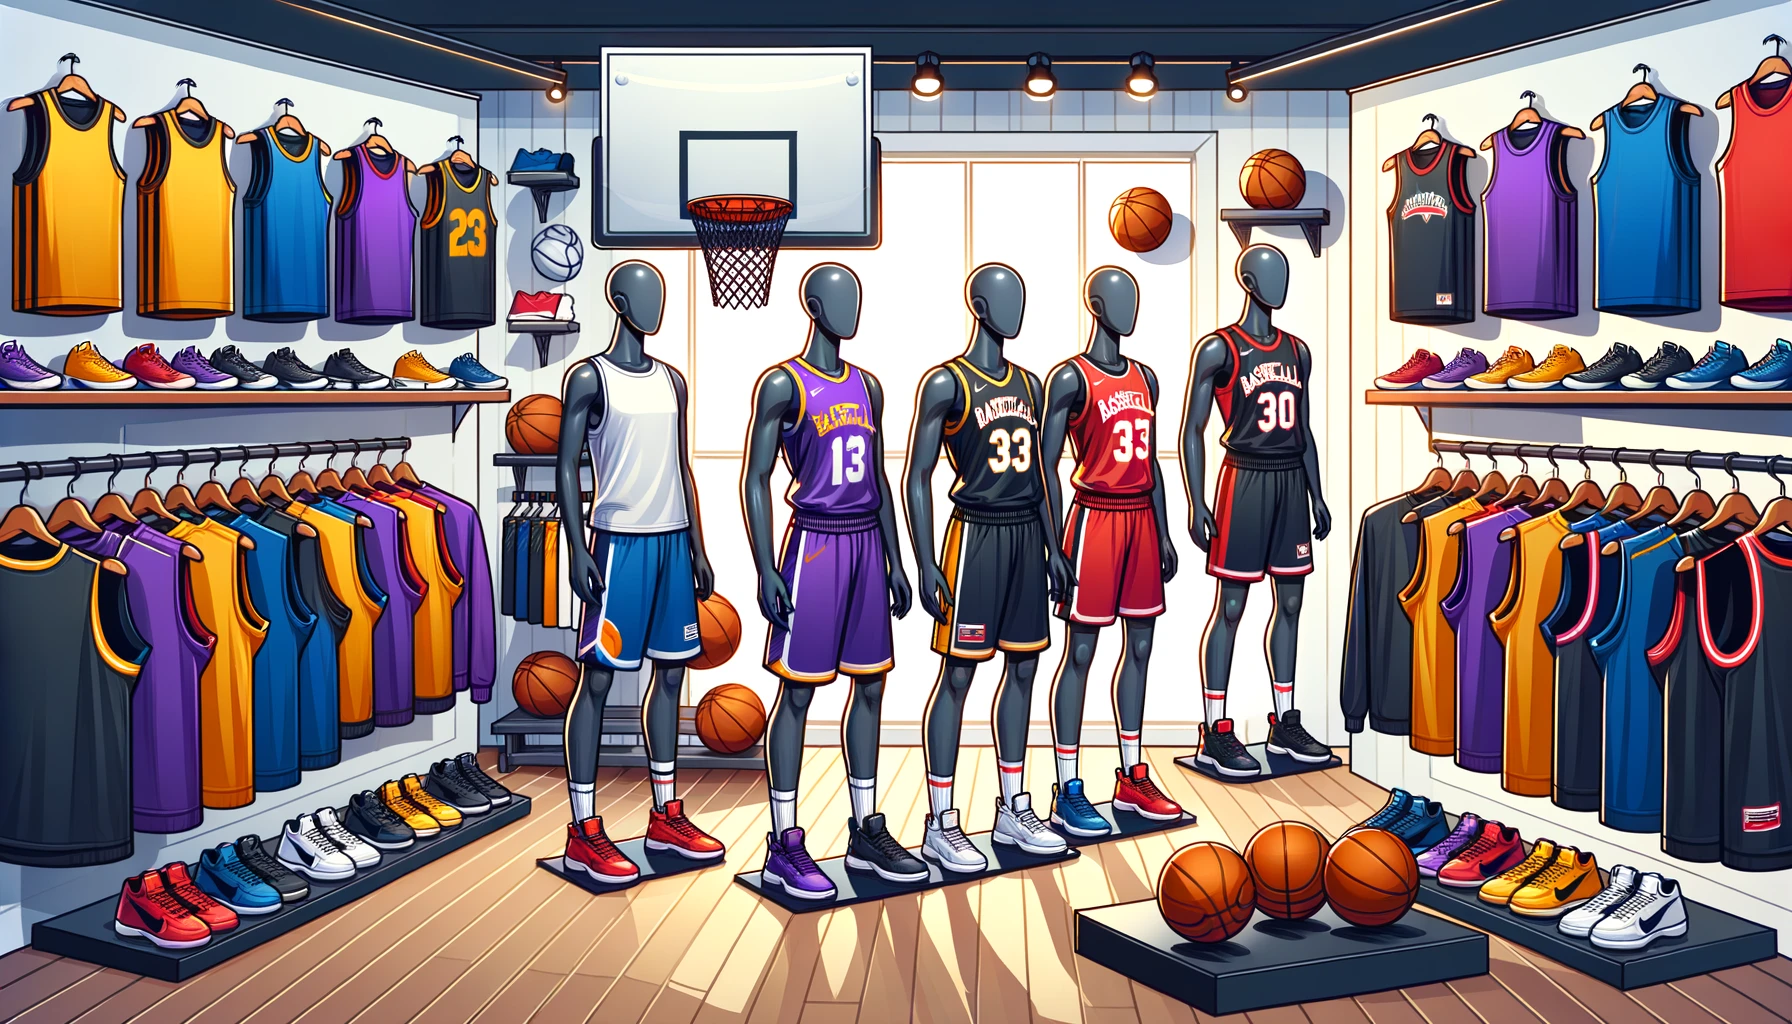 Eine Illustration eines Basketball-Bekleidungsgeschäfts, das eine Vielzahl von Basketball-Bekleidung und Zubehör anbietet.